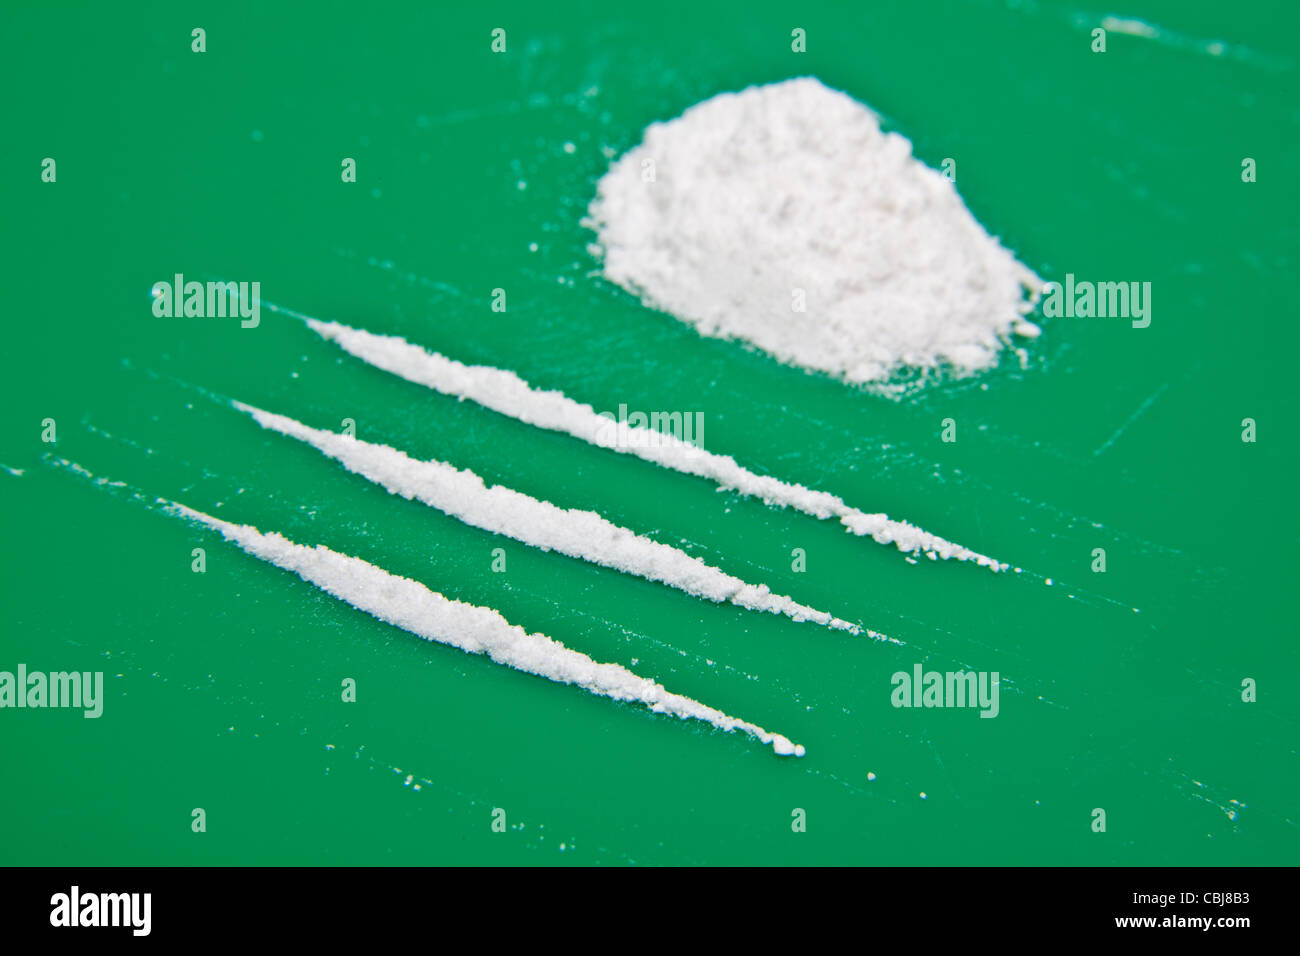 MDAI ein Betäubungsmittel über das Internet als ein "Research Chemical" mit ähnlicher Wirkung zu MDMA auch bekannt als verkauft Luftblasen oder funkeln Stockfoto